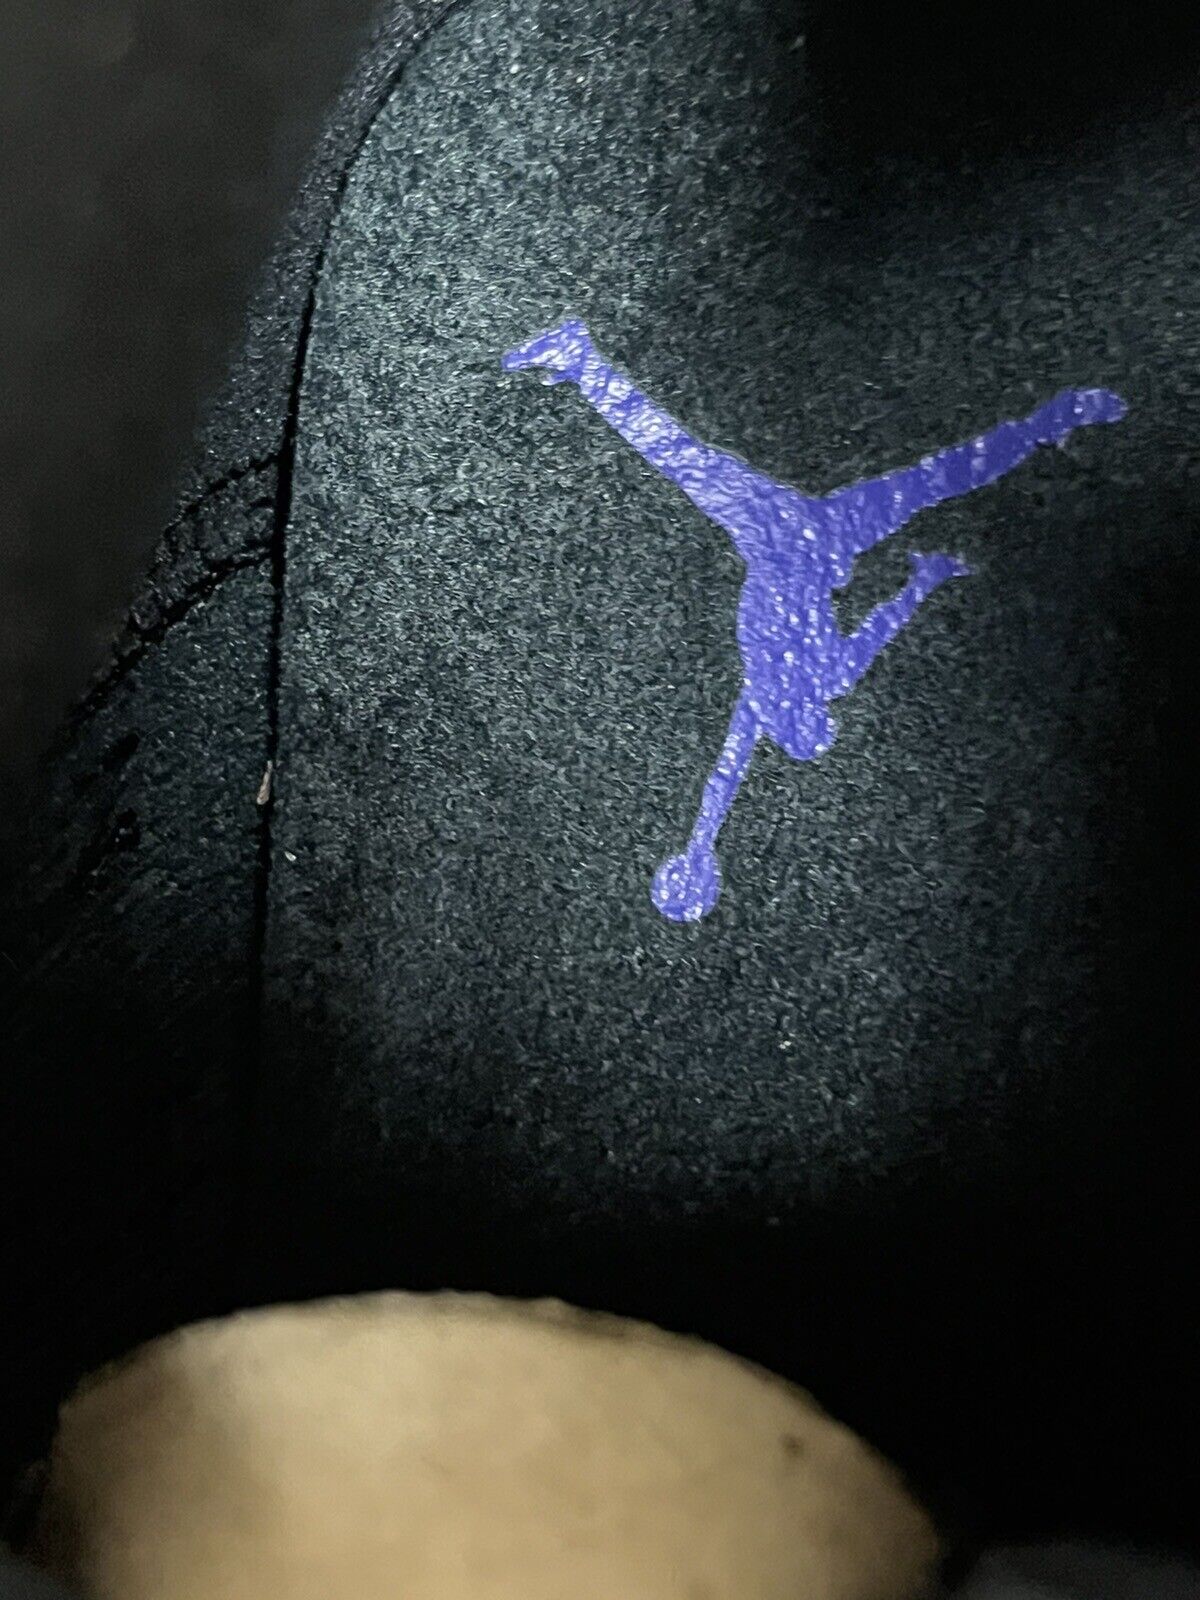 Nike Air Jordan 5 Alternate Grape size 8.5 136027-500 OG V Retro Worn Once Clean